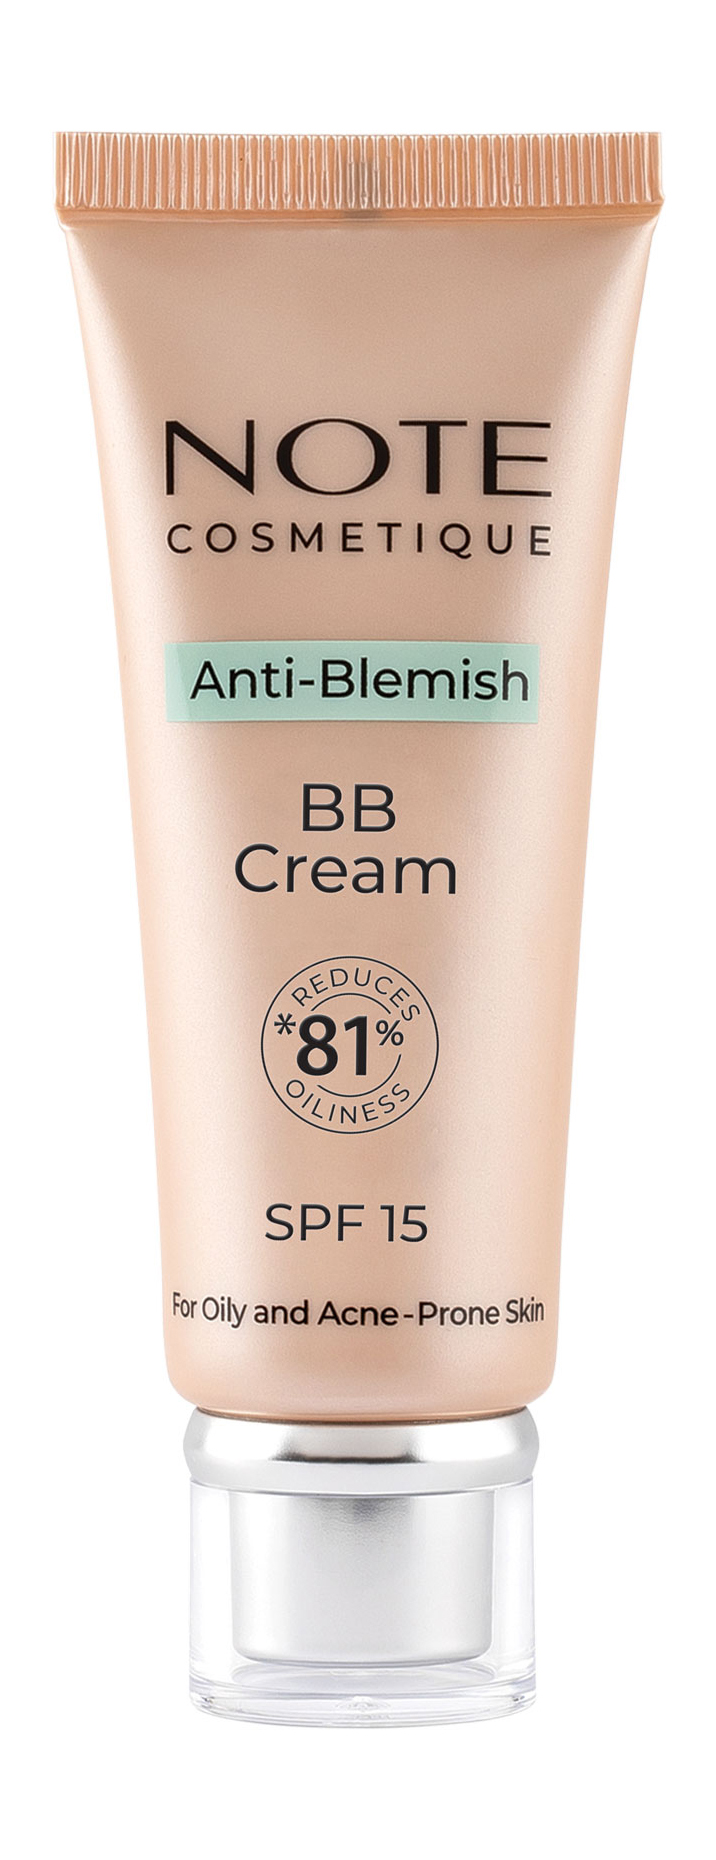 ВВ-крем для проблемной жирной и склонной к акне коже Note Anti-Blemish BB Cream SPF 15